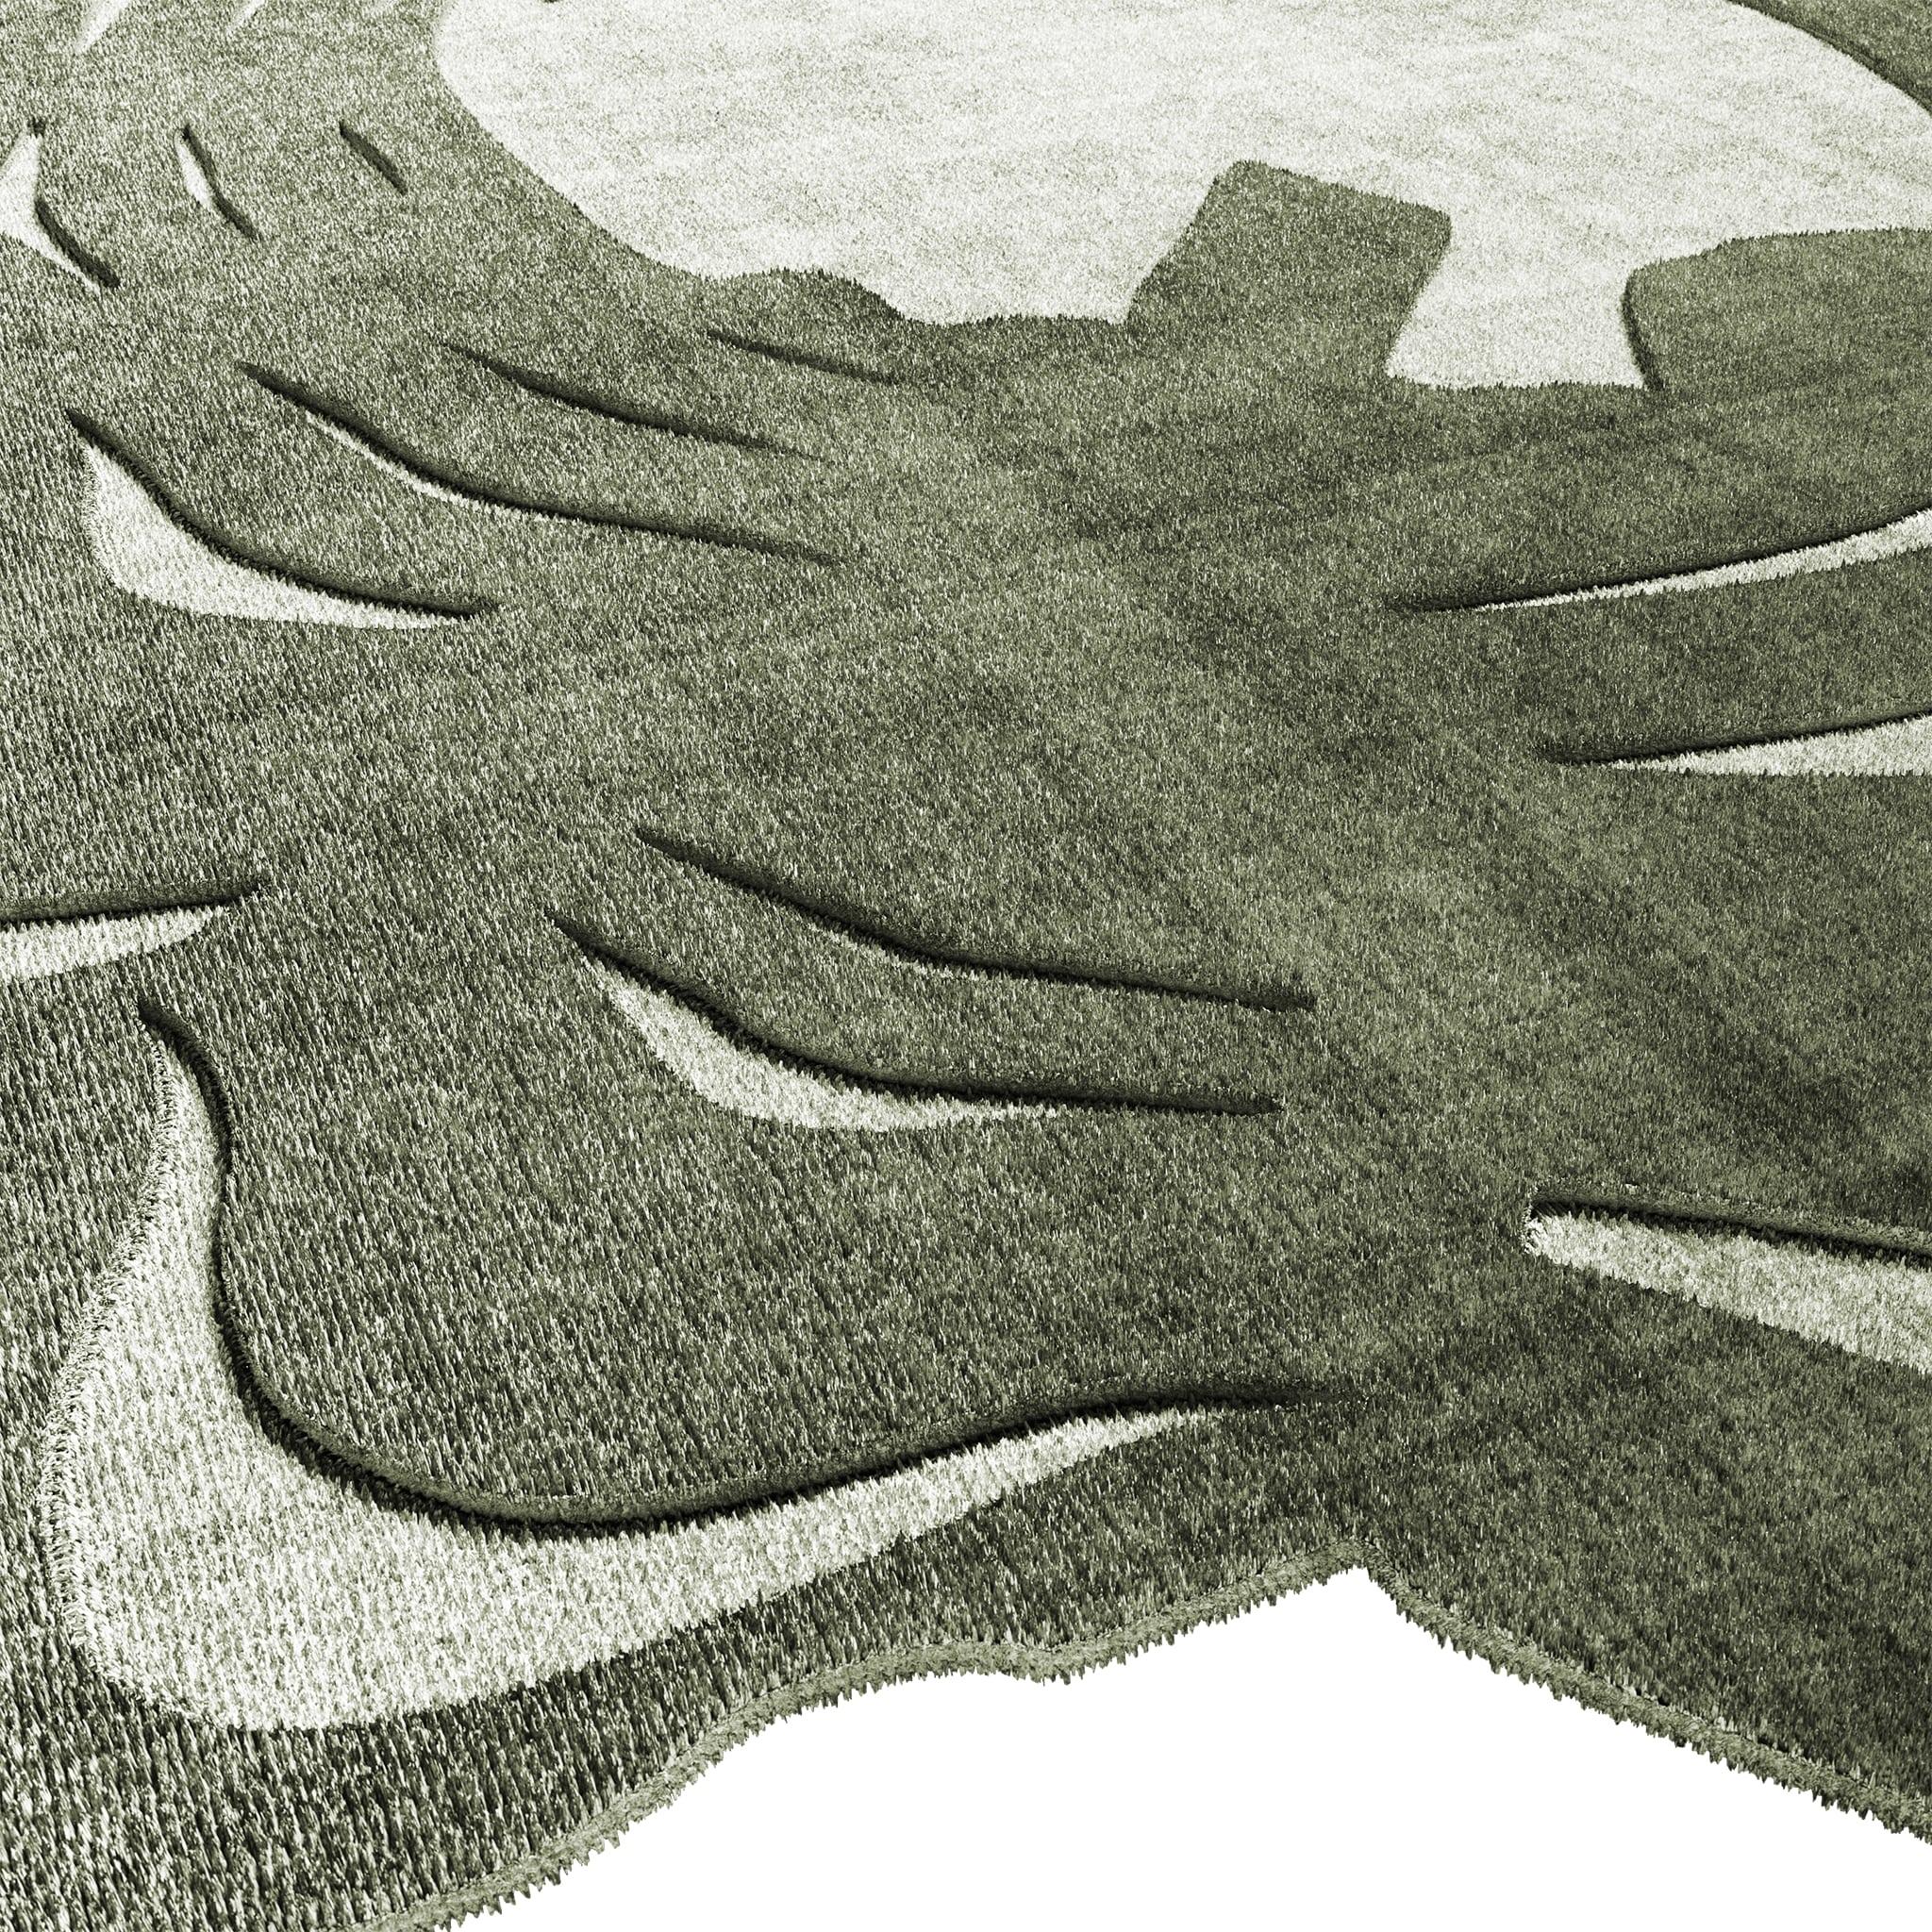 Tapis Façonné #044 également connu sous le nom de Tapis Antepole est un chef d'œuvre de design de HOMMÉS Studio x TAPIS Studio. Fait partie de notre Collection Saped qui est parfaite pour un look intérieur irrévérencieux, du sol aux murs.

Nos tapis